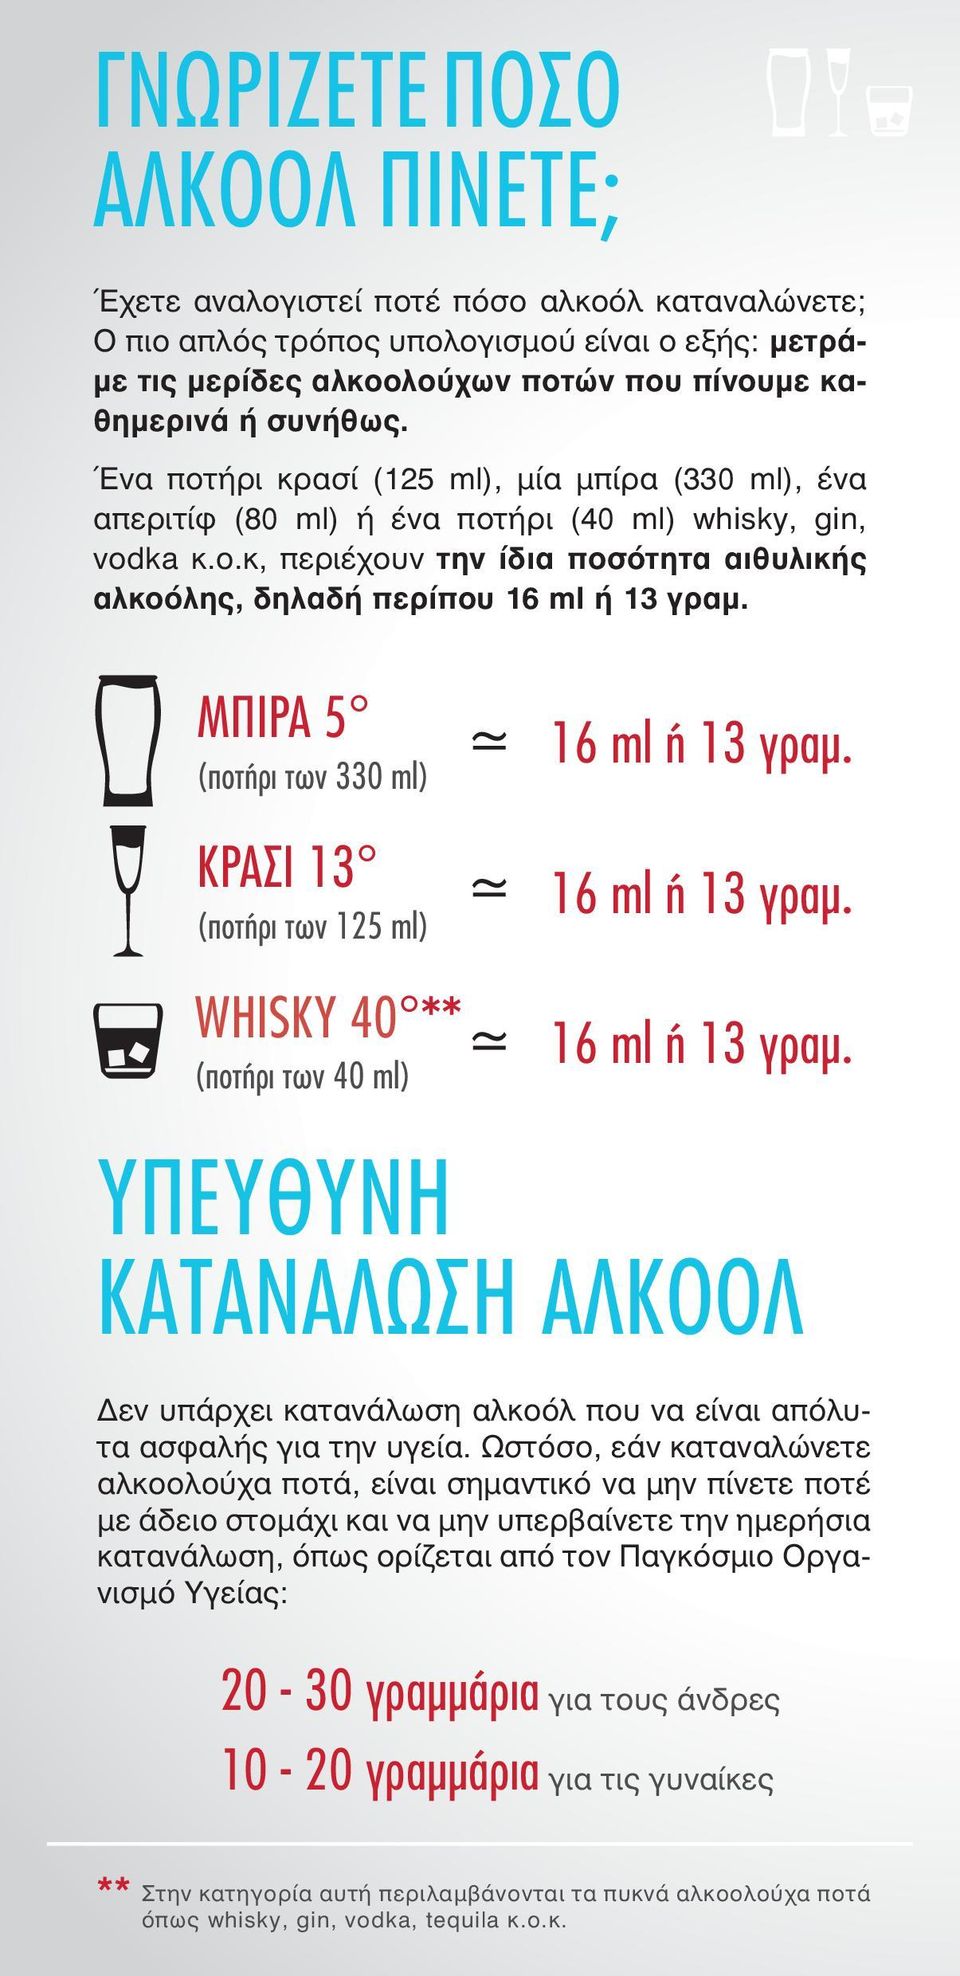 ήρι κρασί (125 ml), μία μπίρα (330 ml), ένα απεριτίφ (80 ml) ή ένα ποτ